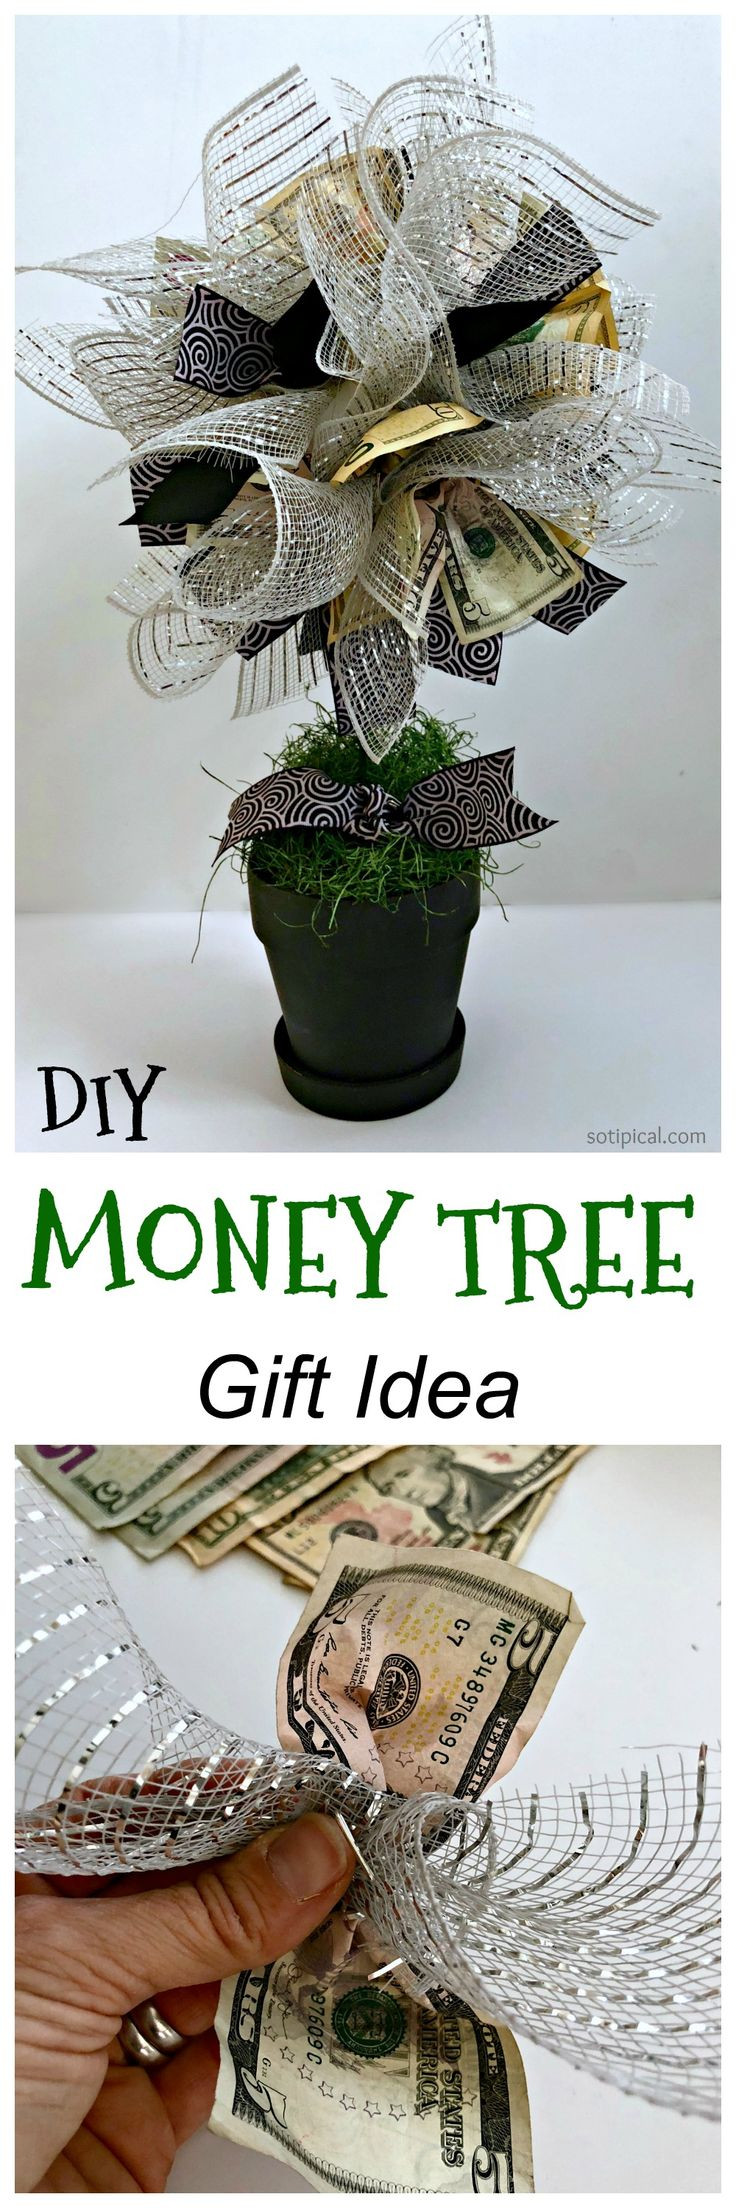 DIY Money Gift Ideas
 Best 25 Money trees ideas on Pinterest